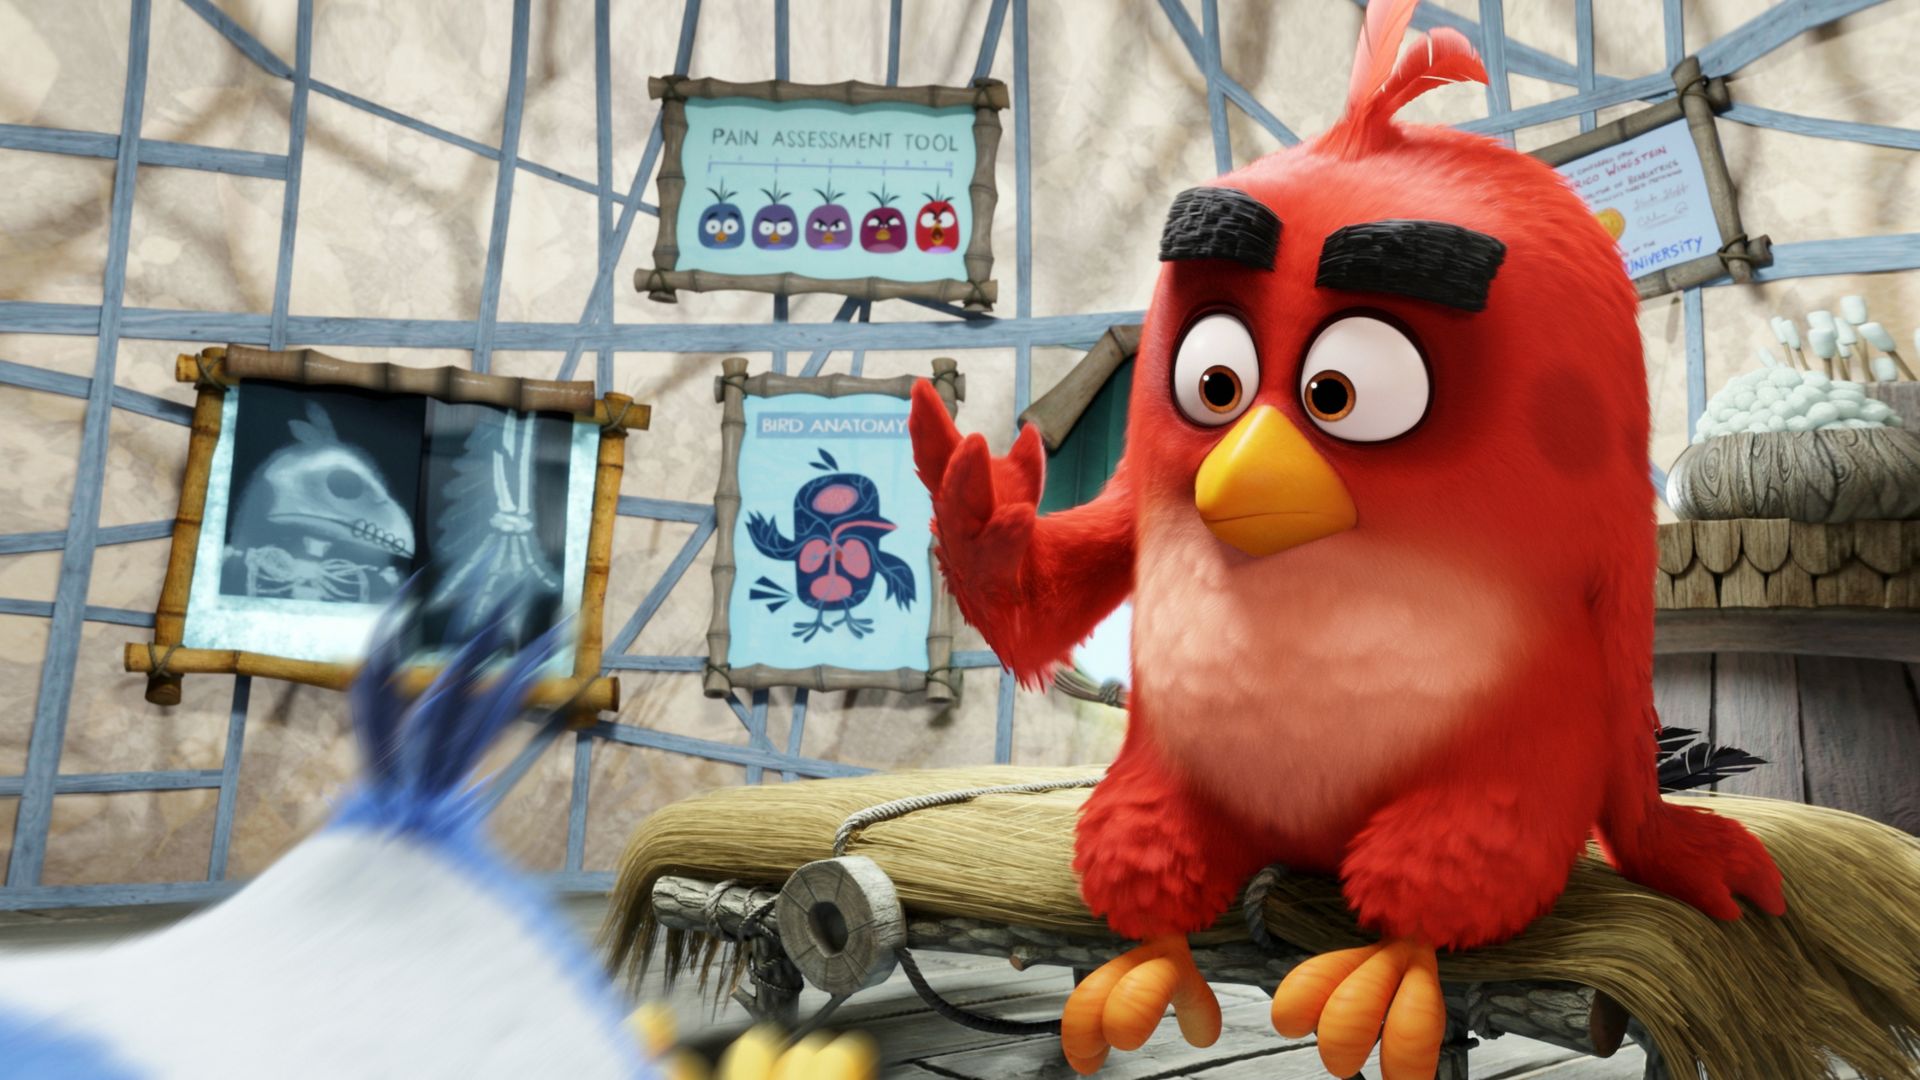 Angry Birds Movie, Красный, Лучшие мультфильмы 2016, Angry Birds Movie, red, Best Animation Movies of 2016 (horizontal)